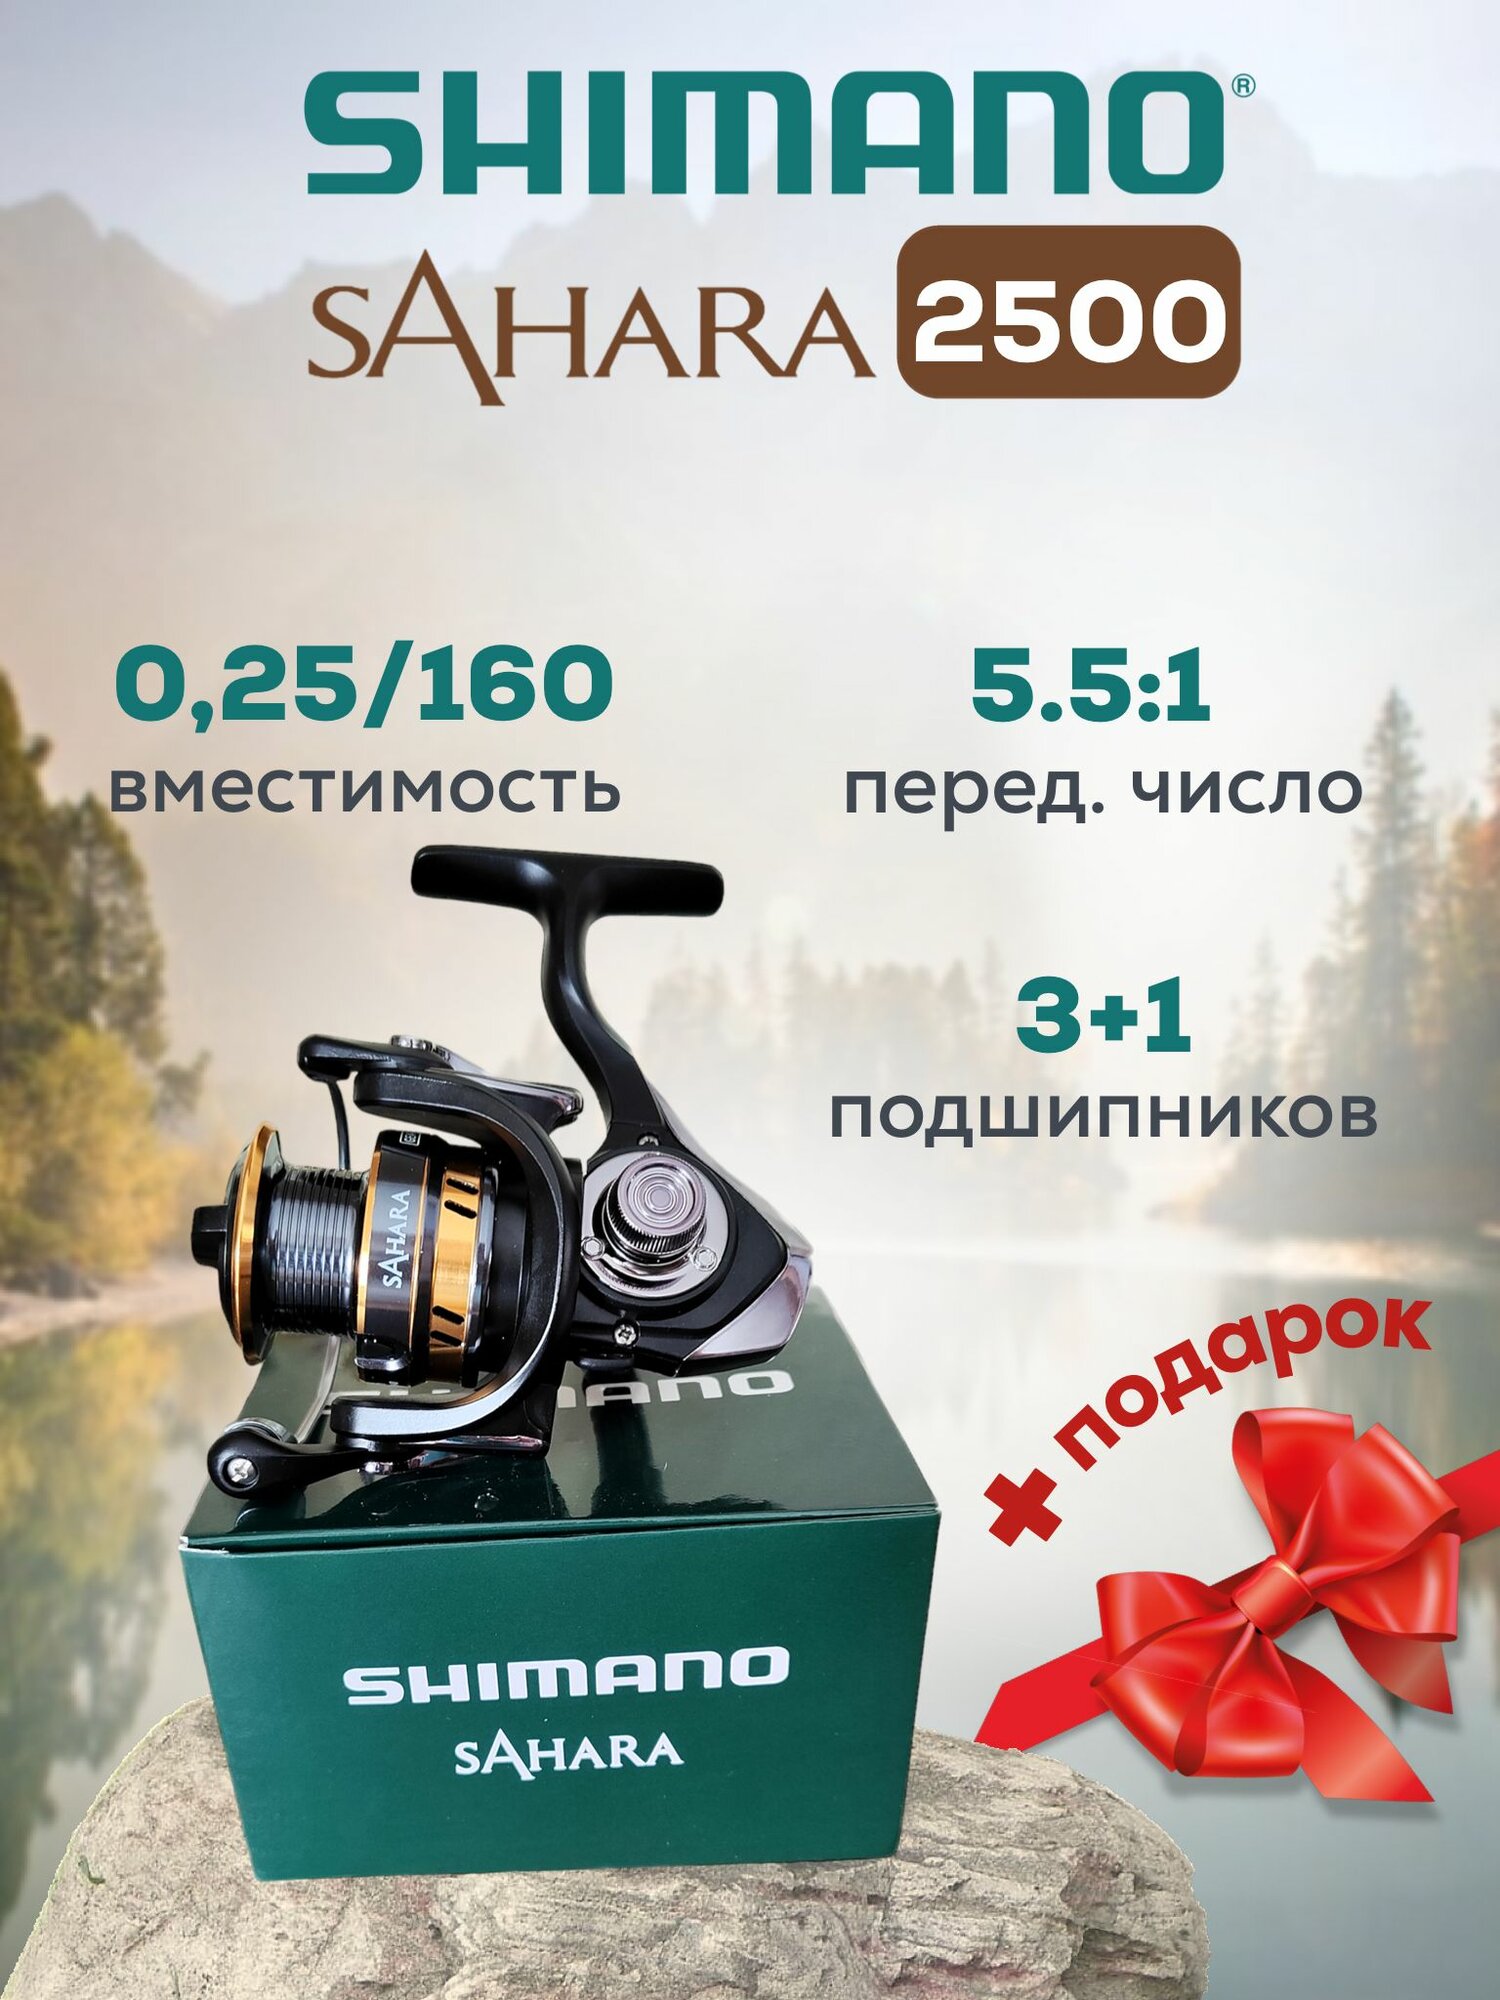 Катушка Рыболовная Sahara 2500.